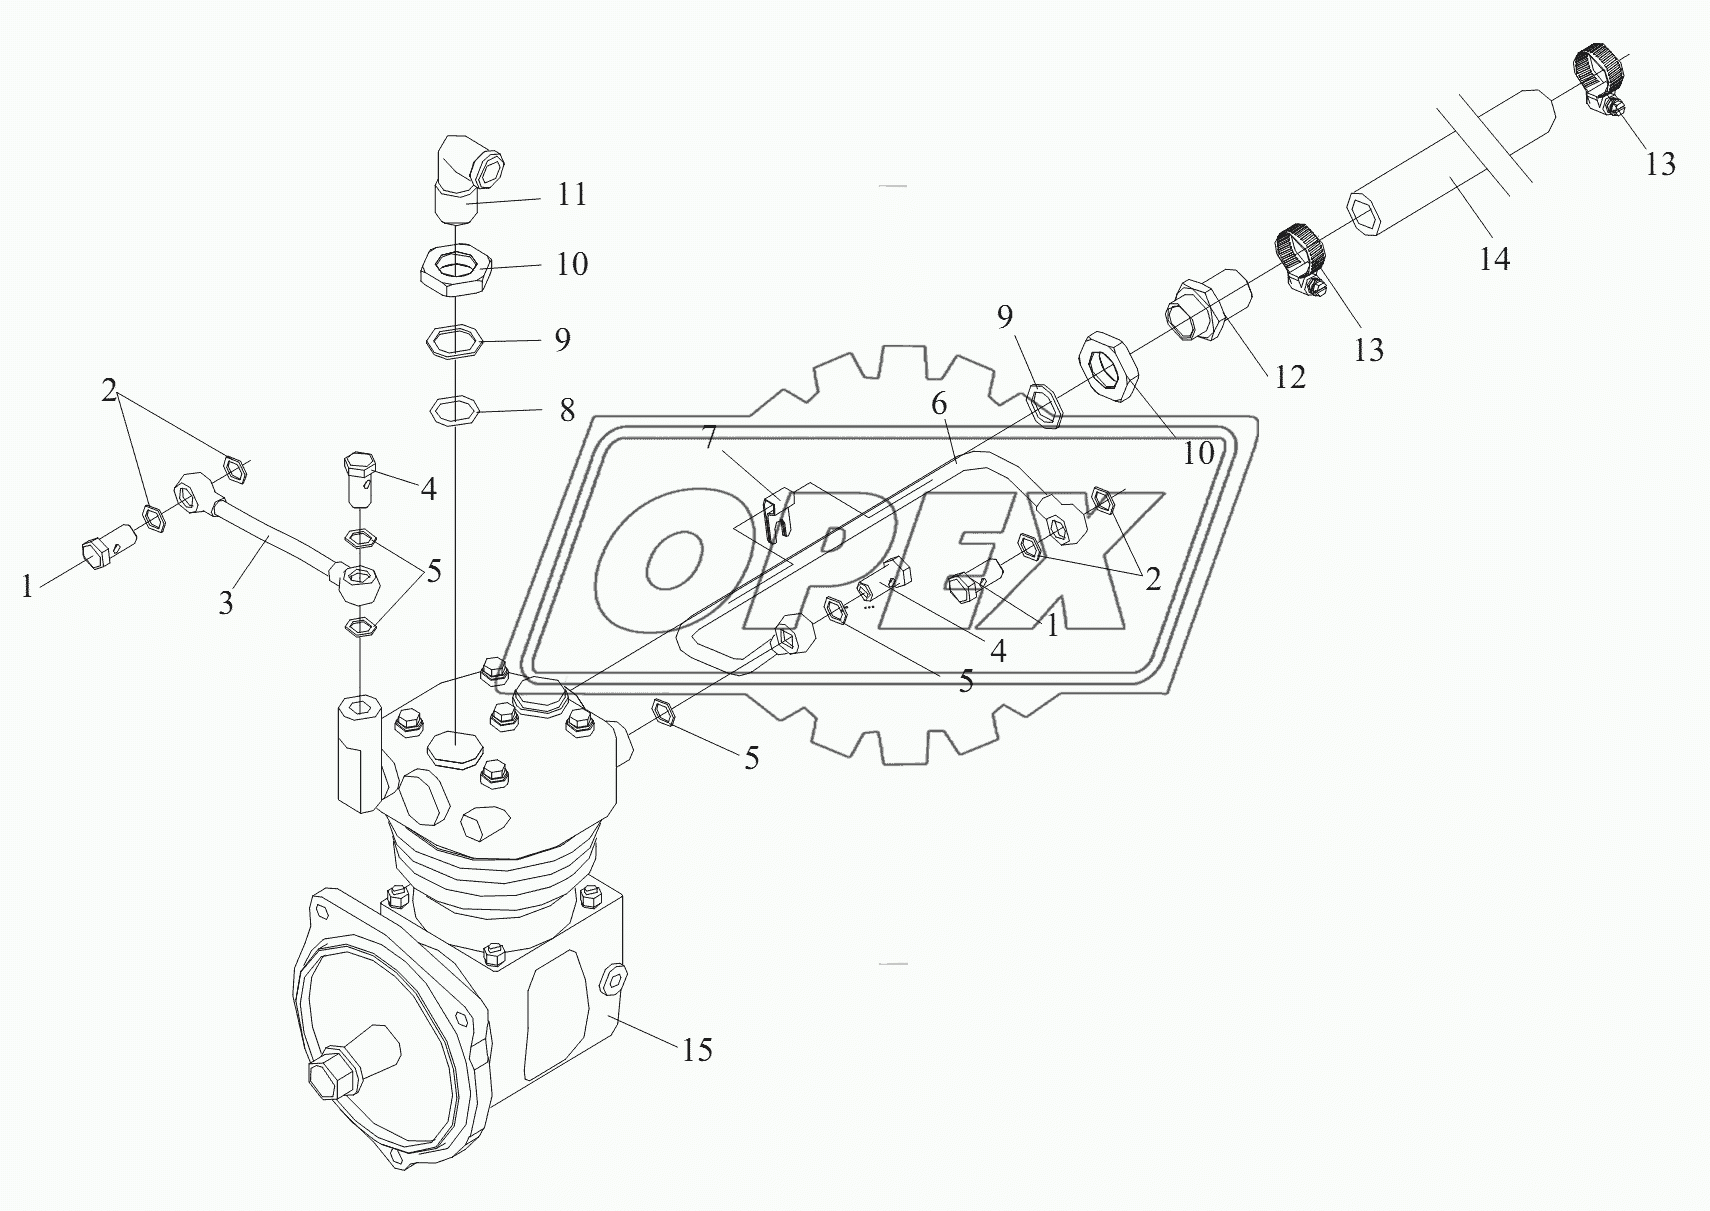 Воздушный компрессор (II)